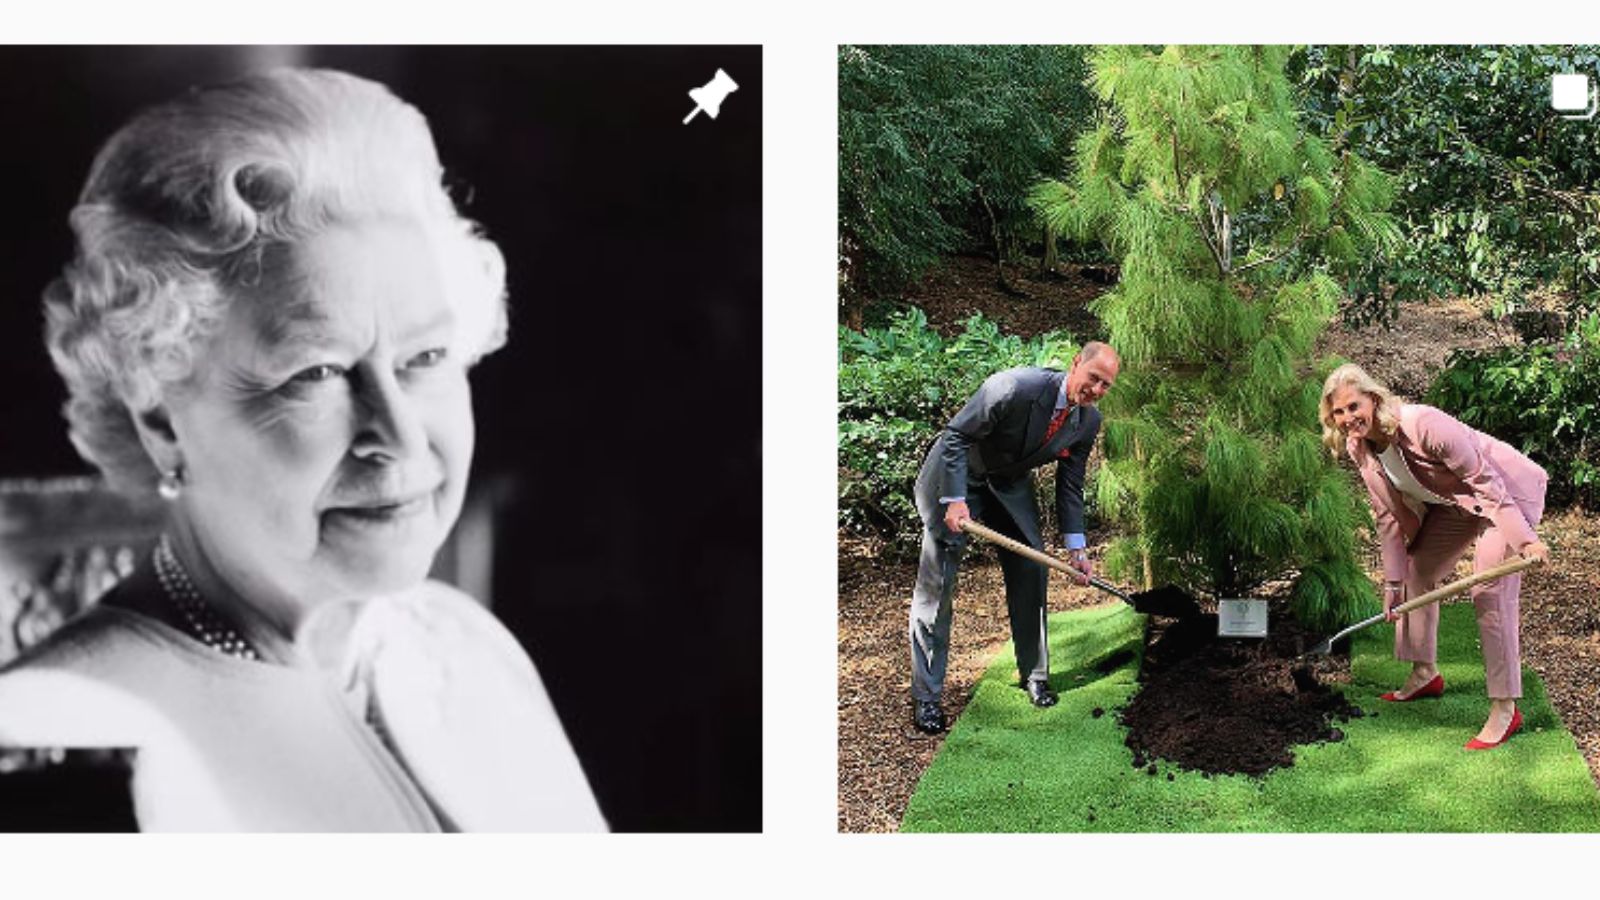 Internautas ironizam últimas fotos do perfil oficial da família real britânica